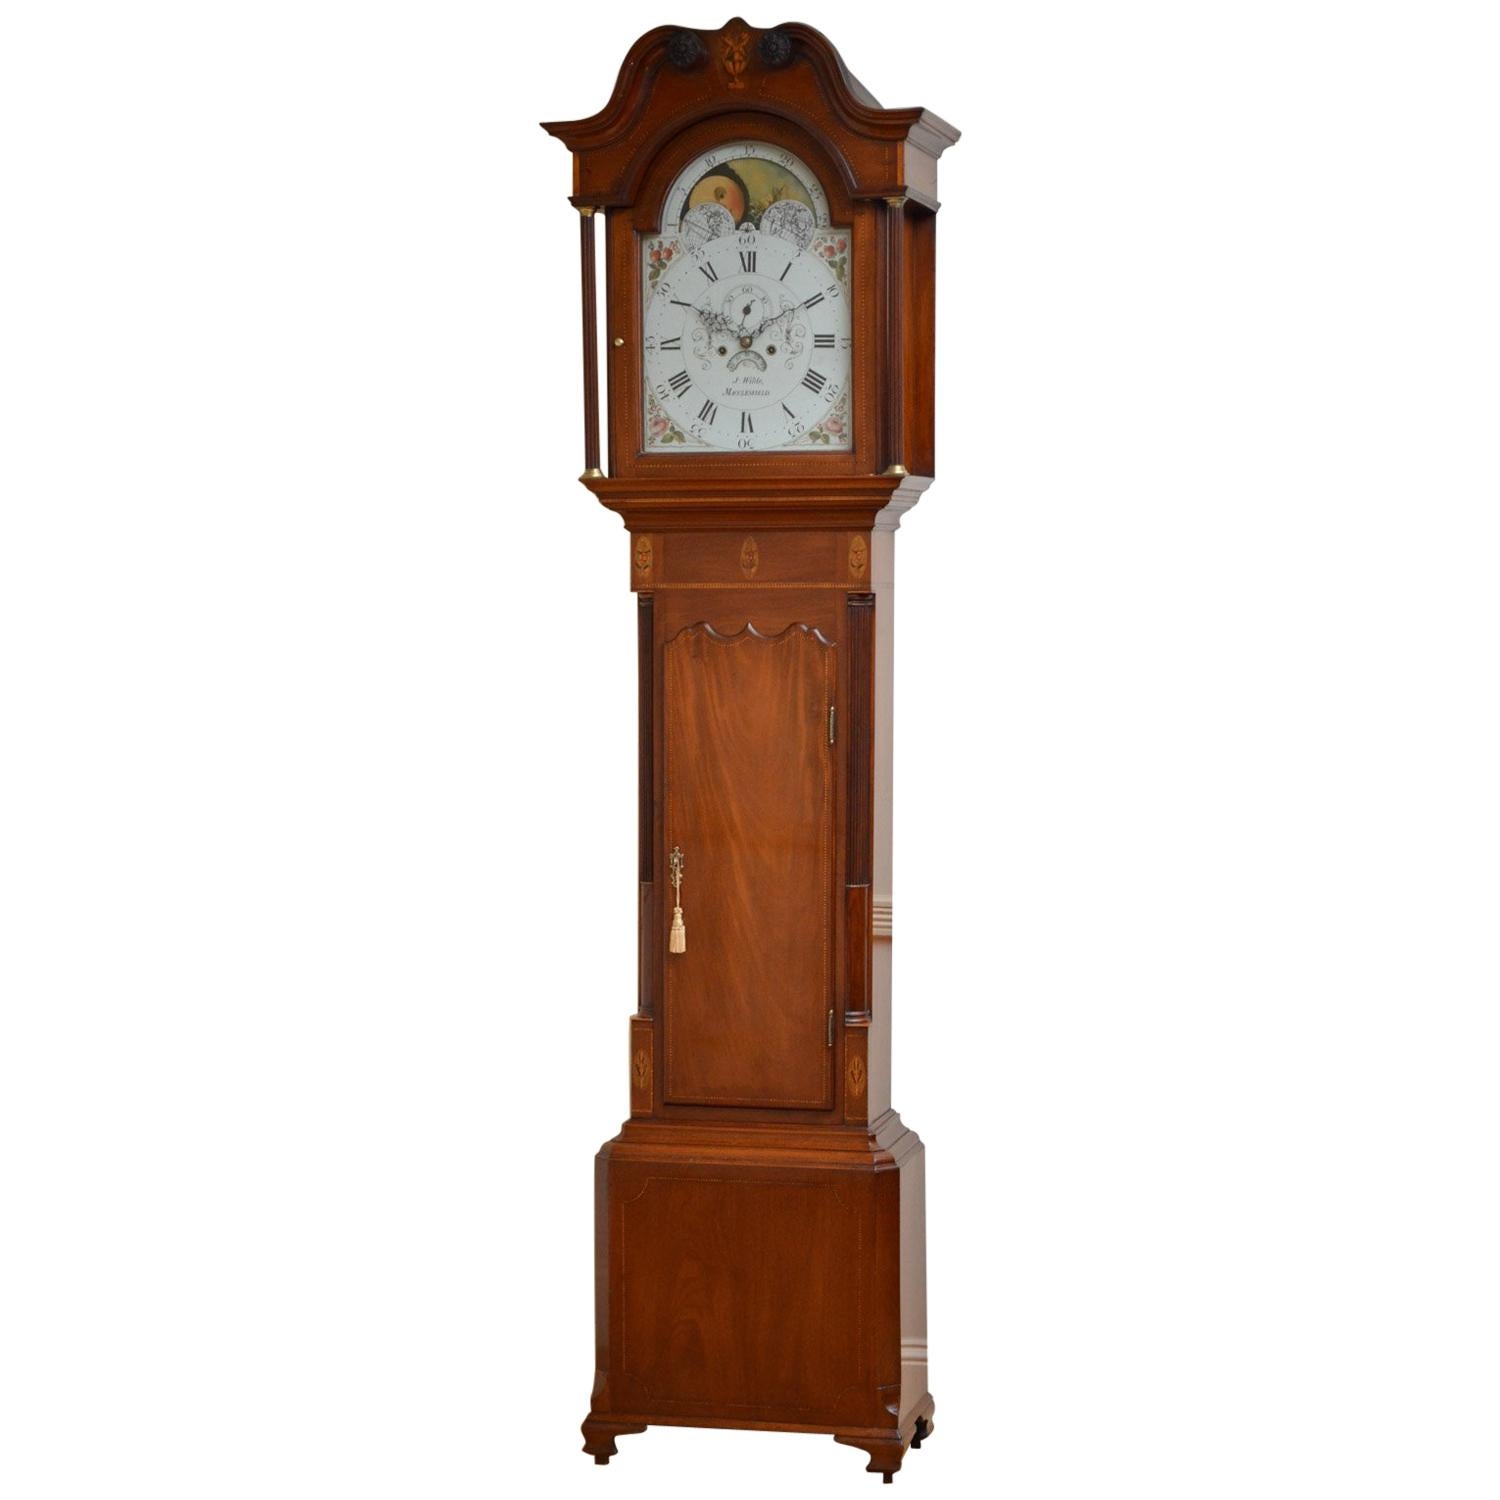 George III Longcase Clock by J. Wilde, Macclesfield